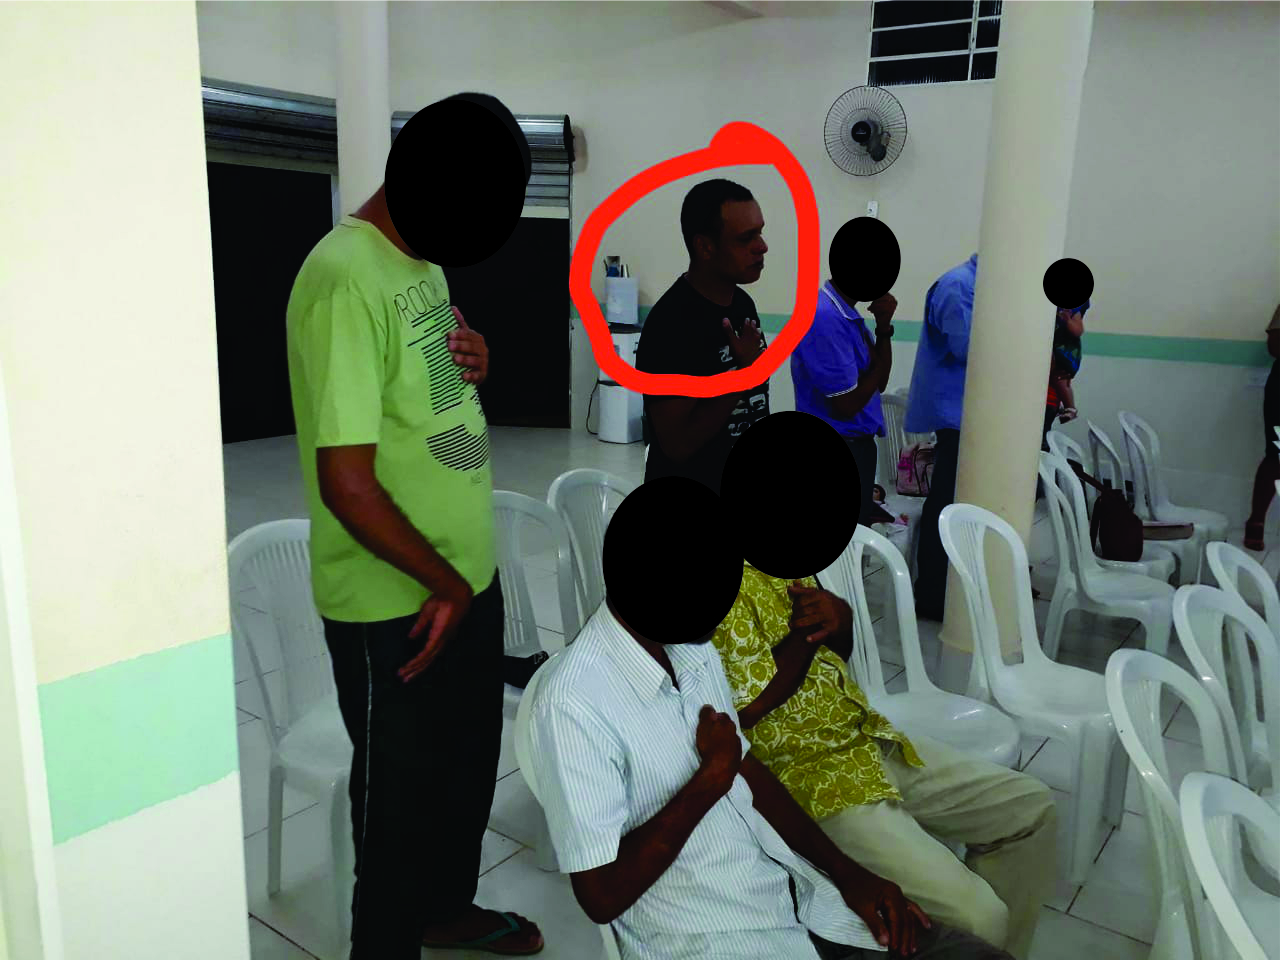 Acusado de estupros em Guanambi participou de culto religioso antes de ser preso em Minas